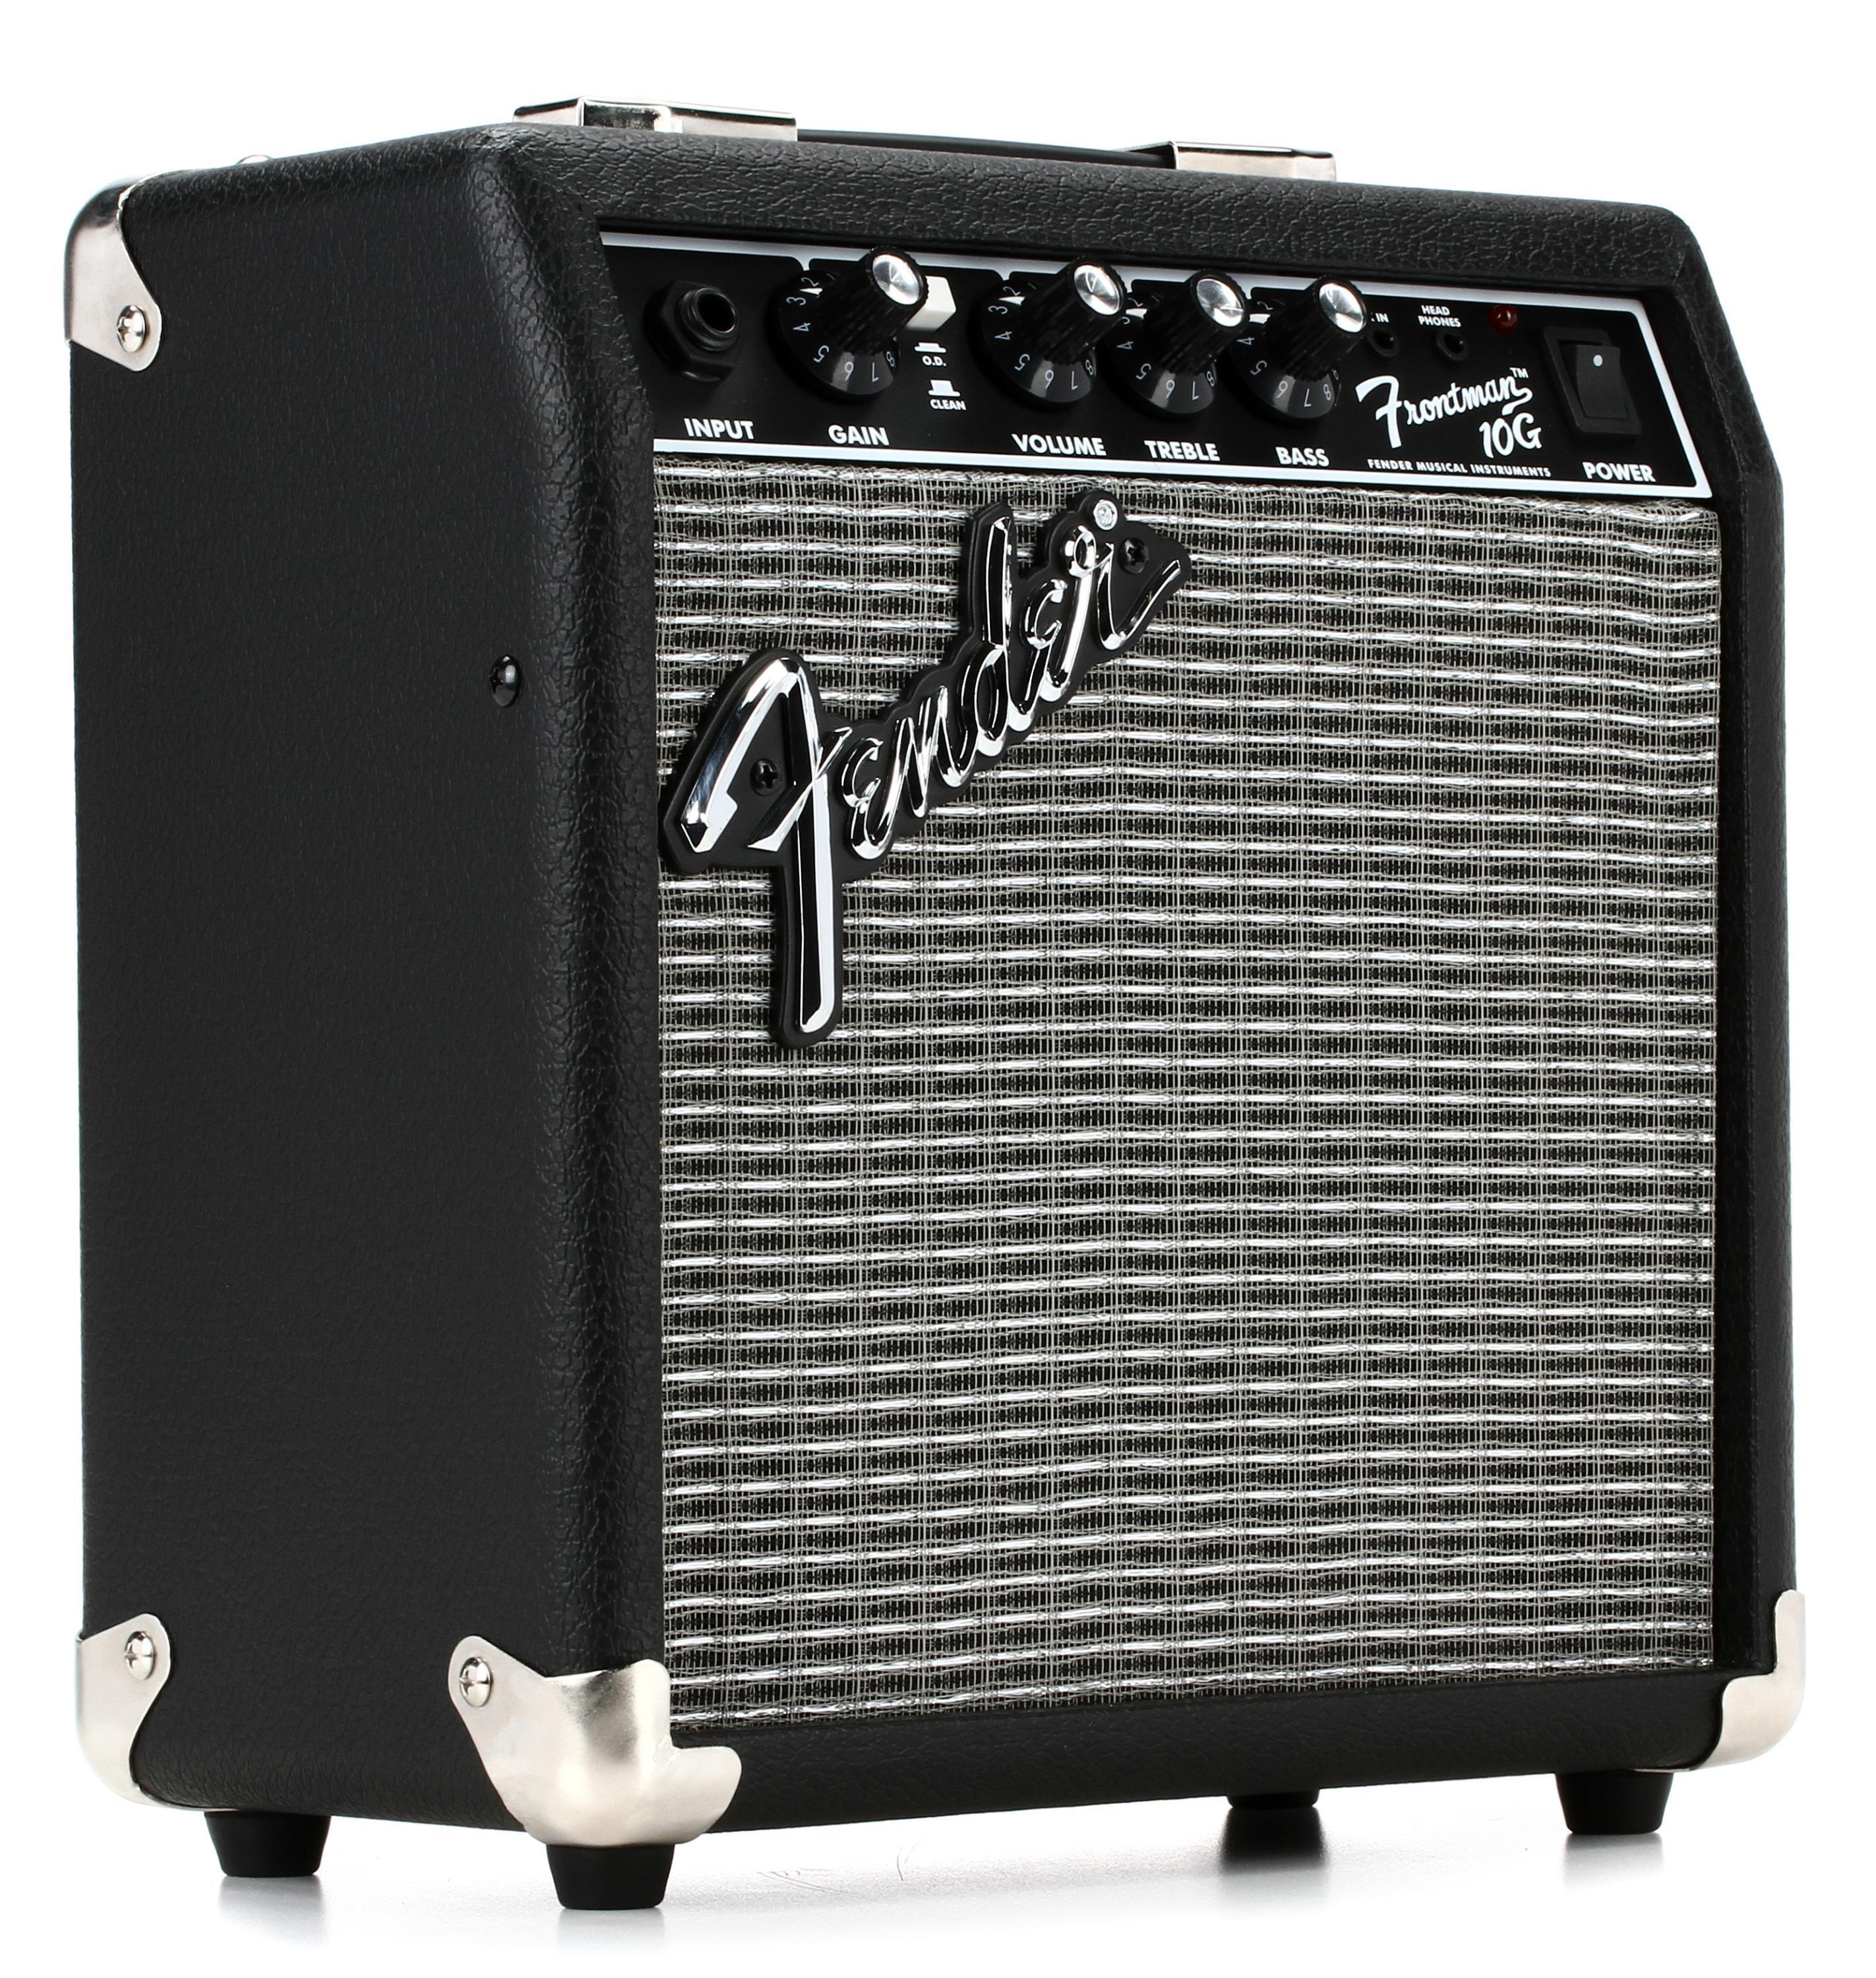 Bundled Item: Fender Frontman 10G 1x6" 10-watt Combo Amp